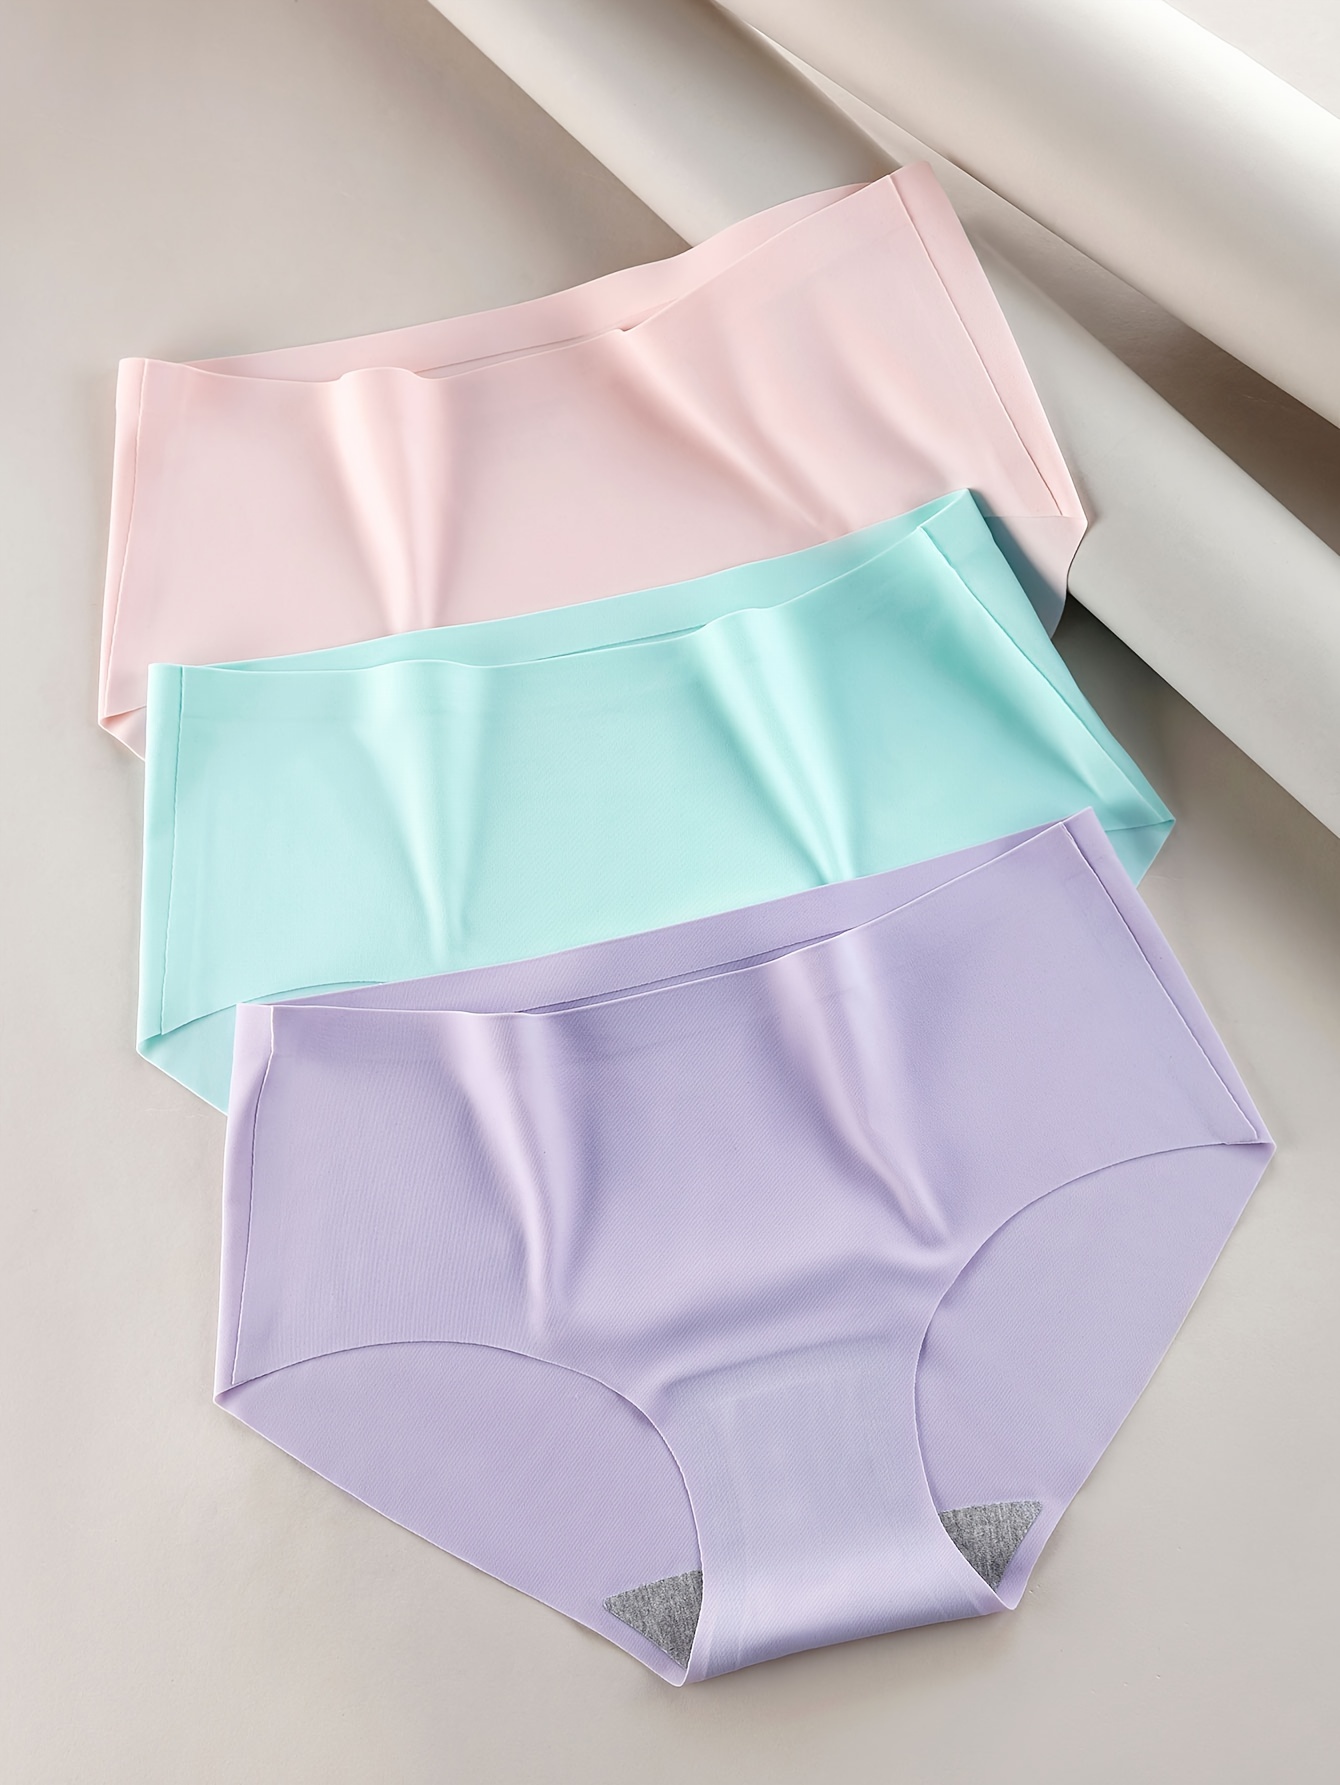 Seamless Underwear For Woman Breathable Underwear Ladies Underwear